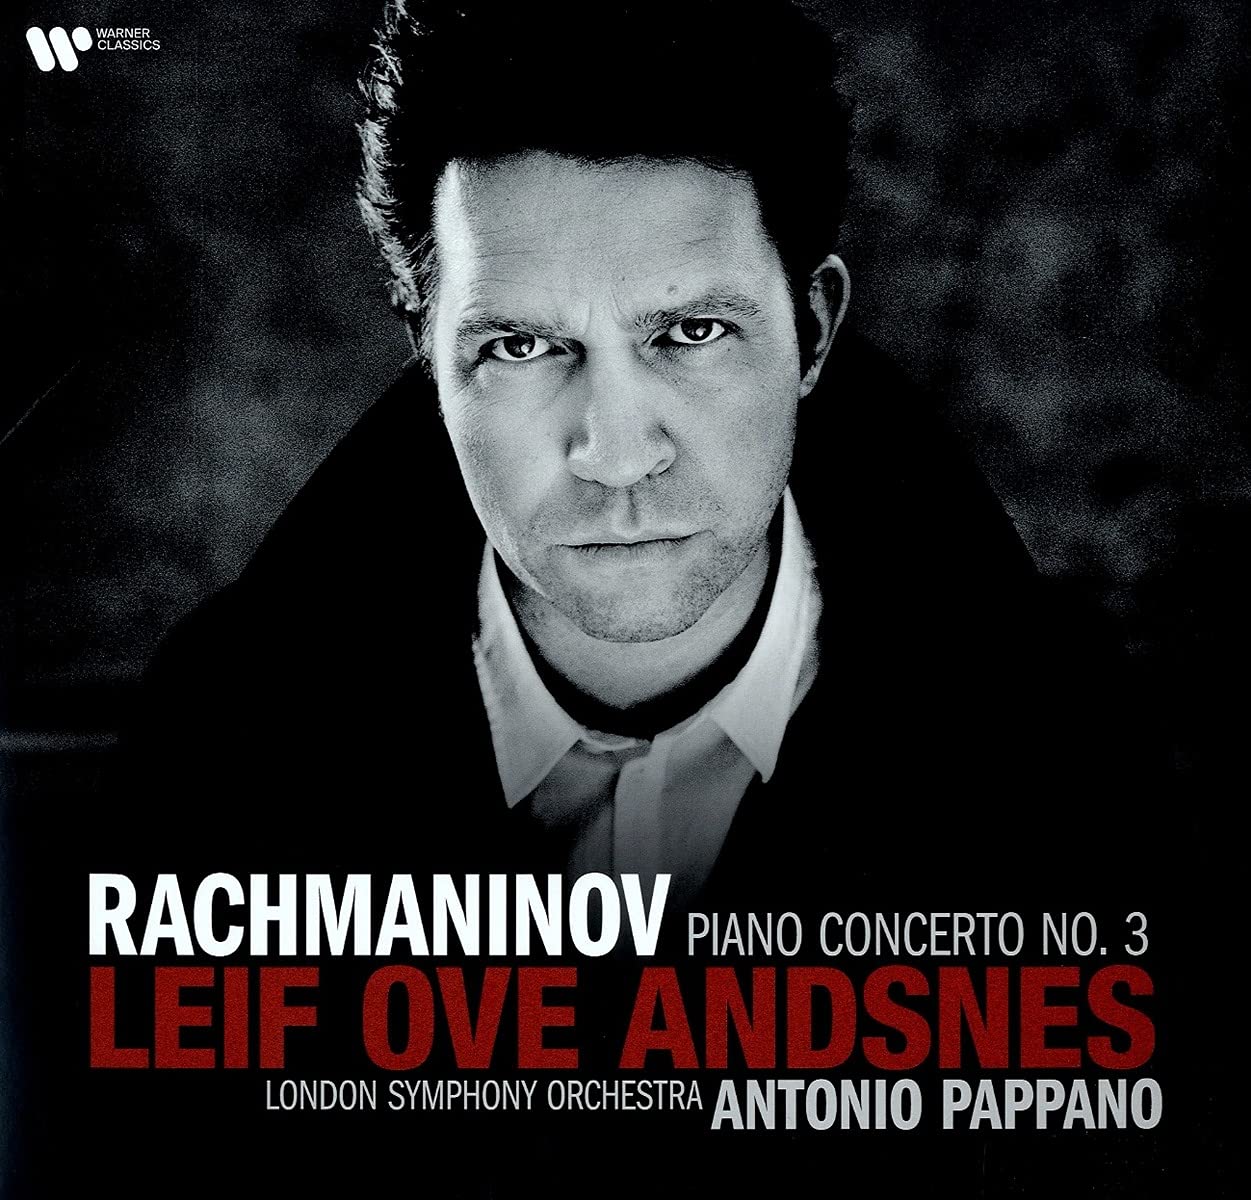 RACHMANINOV: PIANO CONCERTO NO. 3 - LEIF OVE ANDSNES, ANTONIO PAPPANO, LONDON SYMPHONY ORCHESTRA (LP)